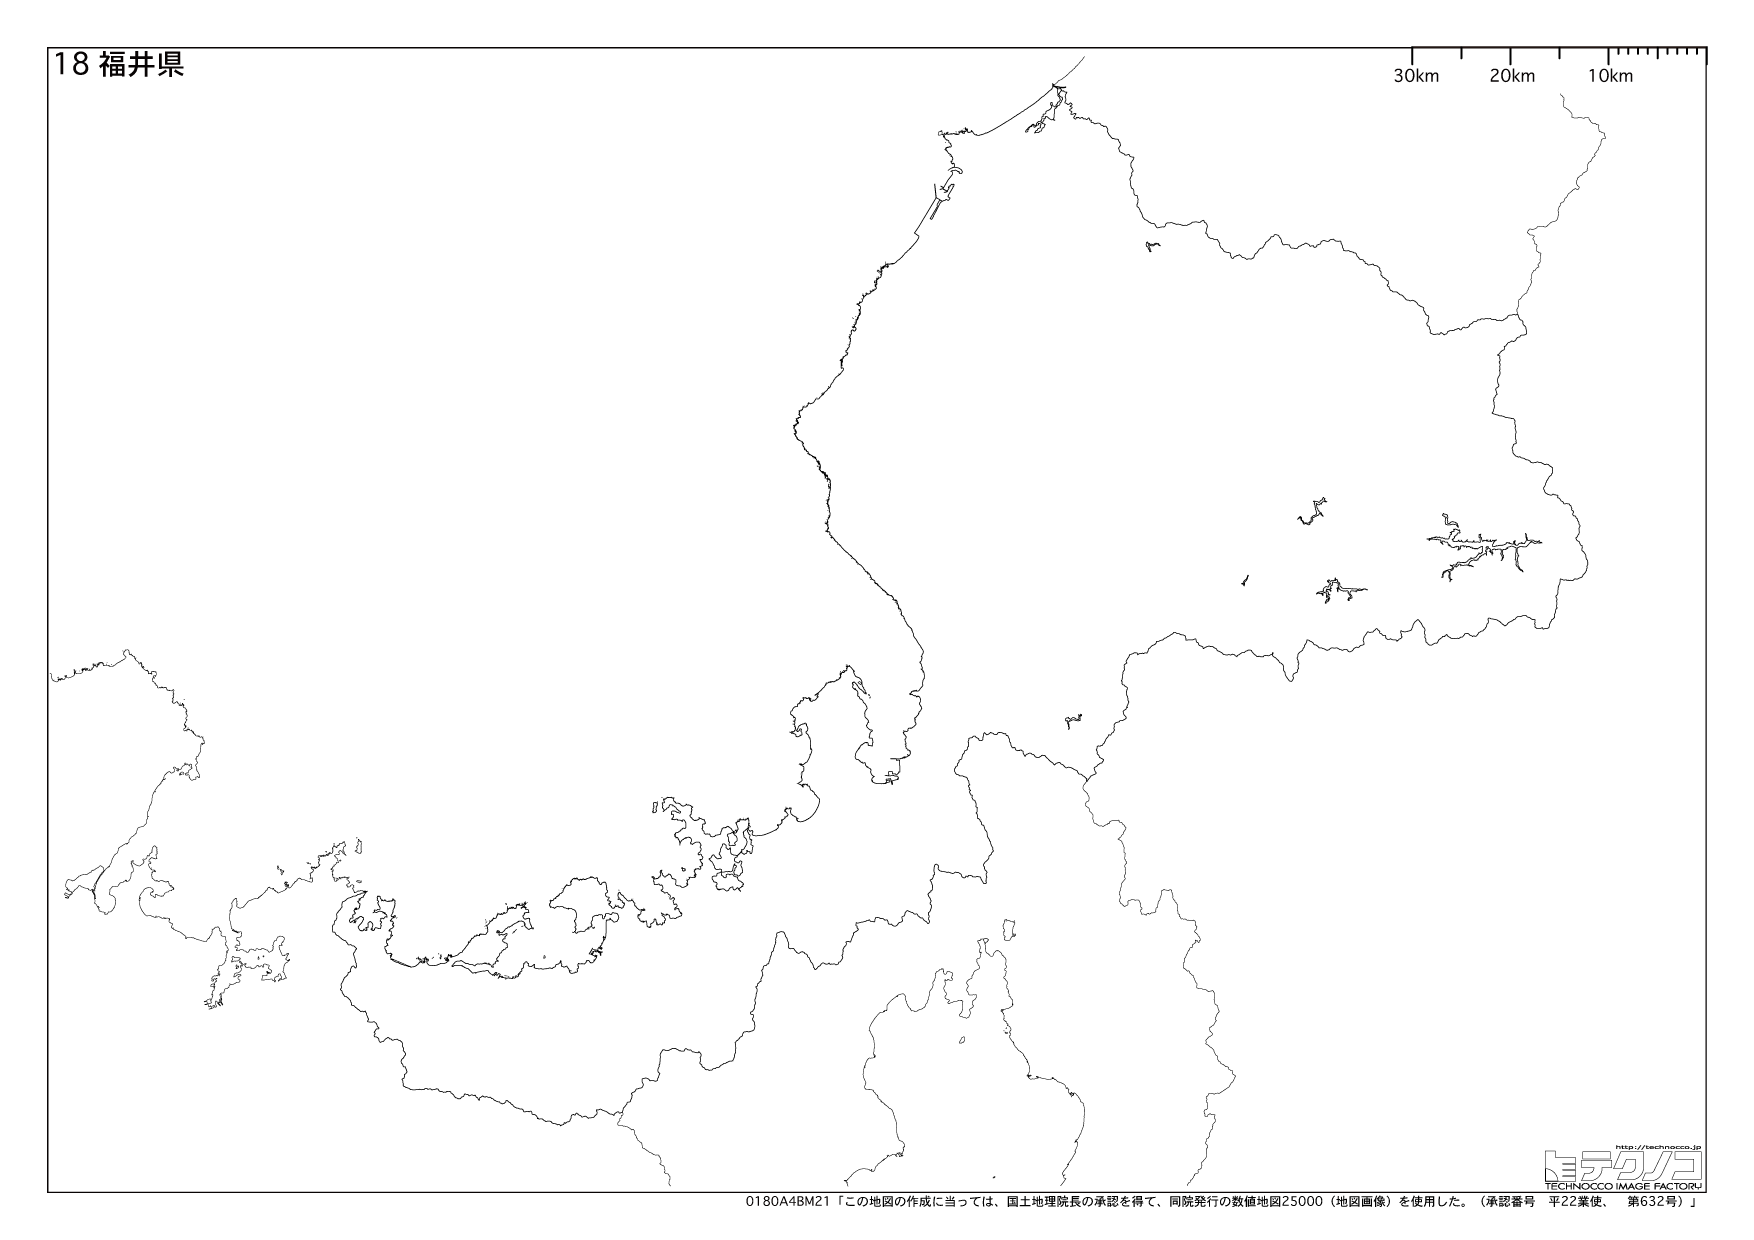 福井県の白地図と市町村の合併情報